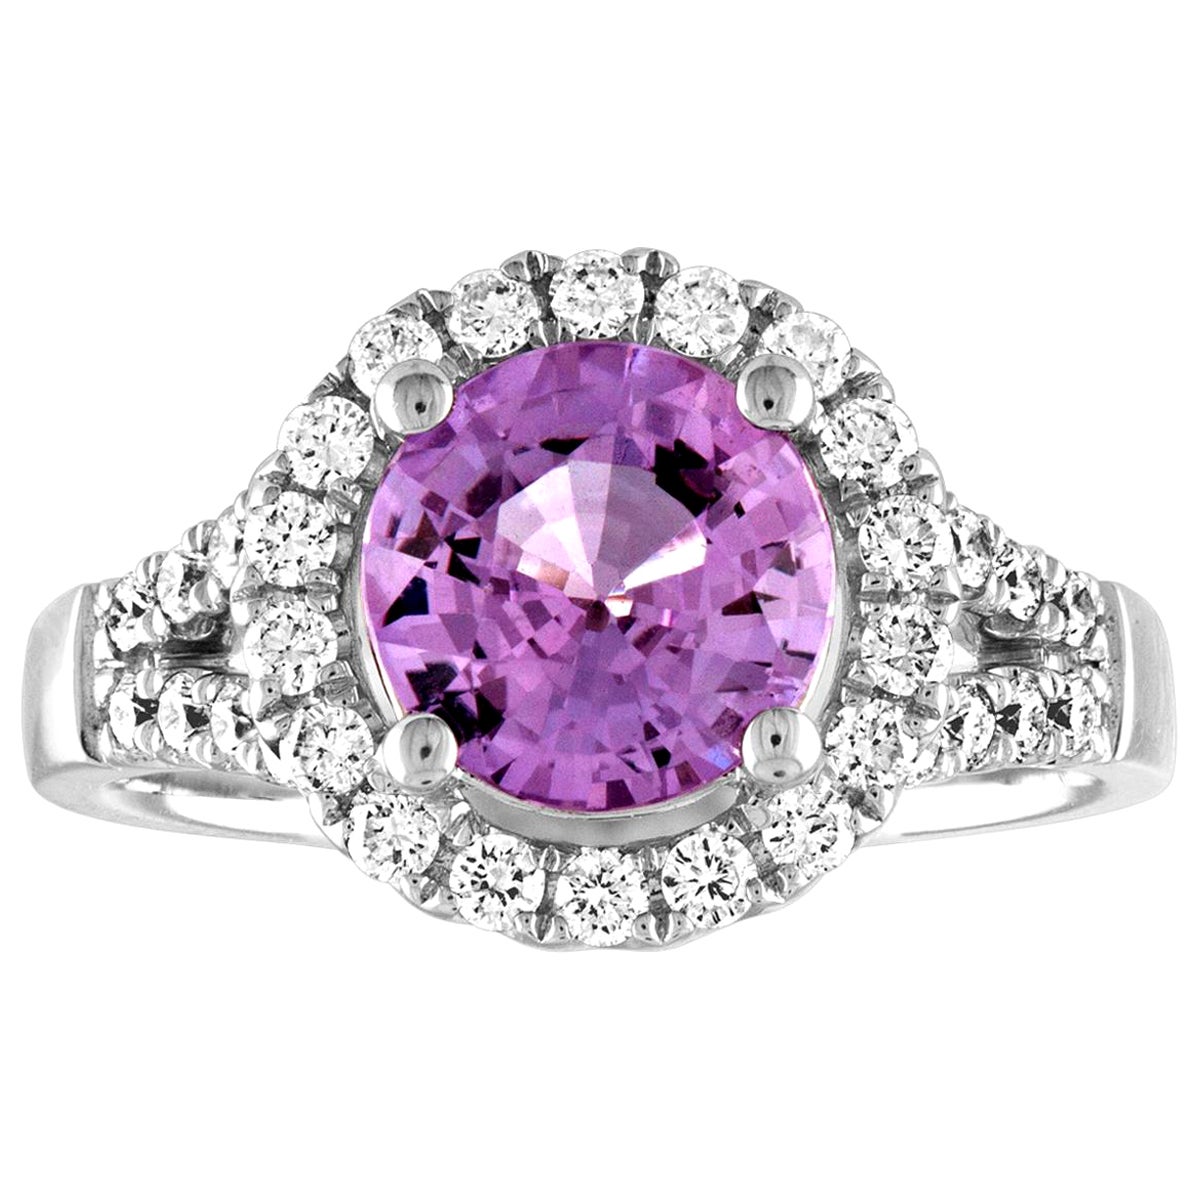 Goldring, zertifizierter unbehandelter 2,18 Karat runder rosa Saphir Diamant